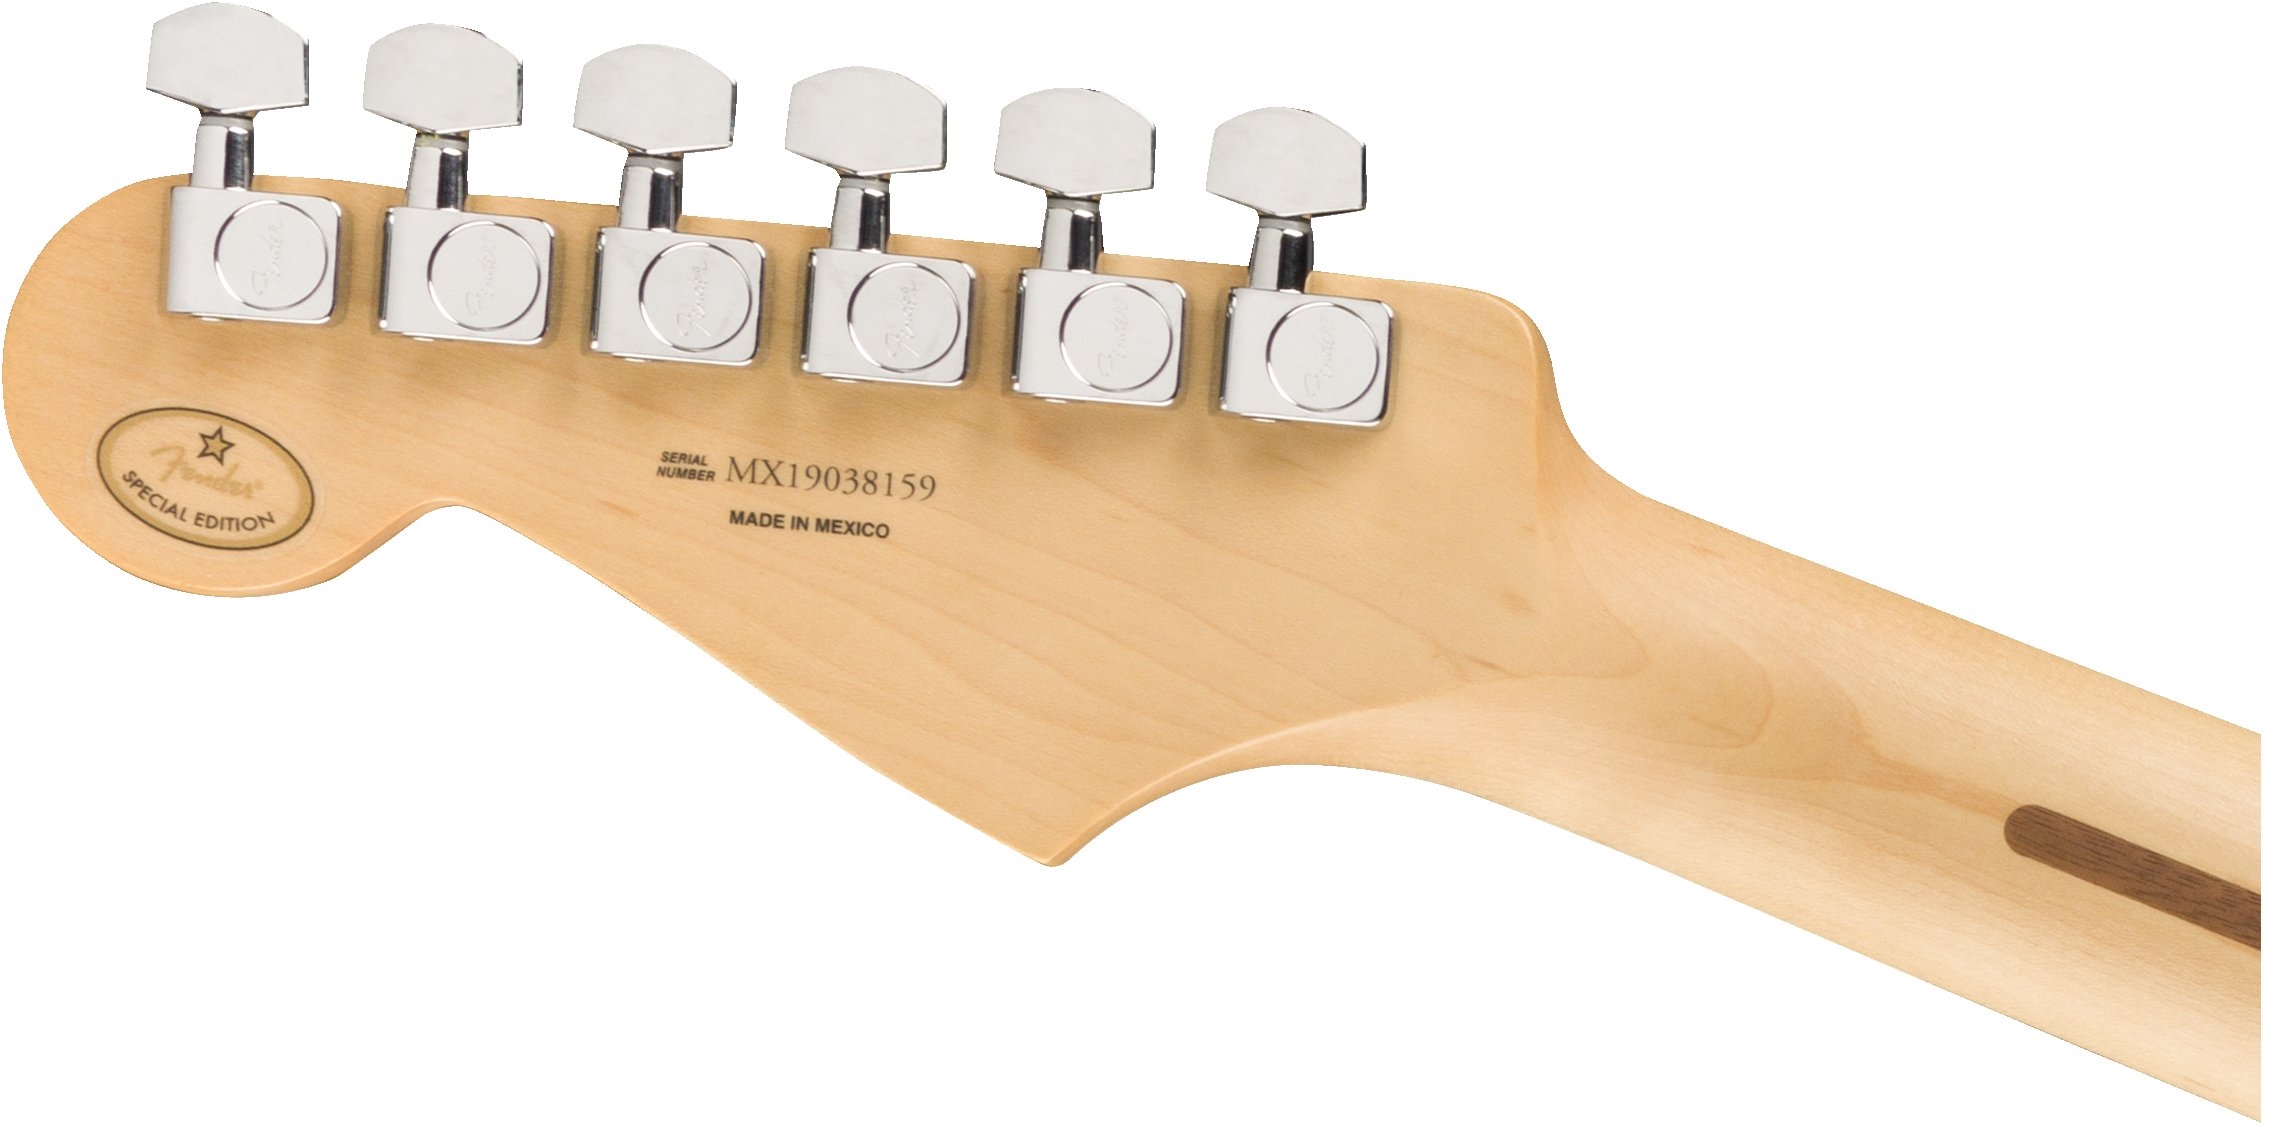 Fender Strat Player Ltd Mex 3s Trem Pf - Fiesta Red - Guitare Électrique Forme Str - Variation 5